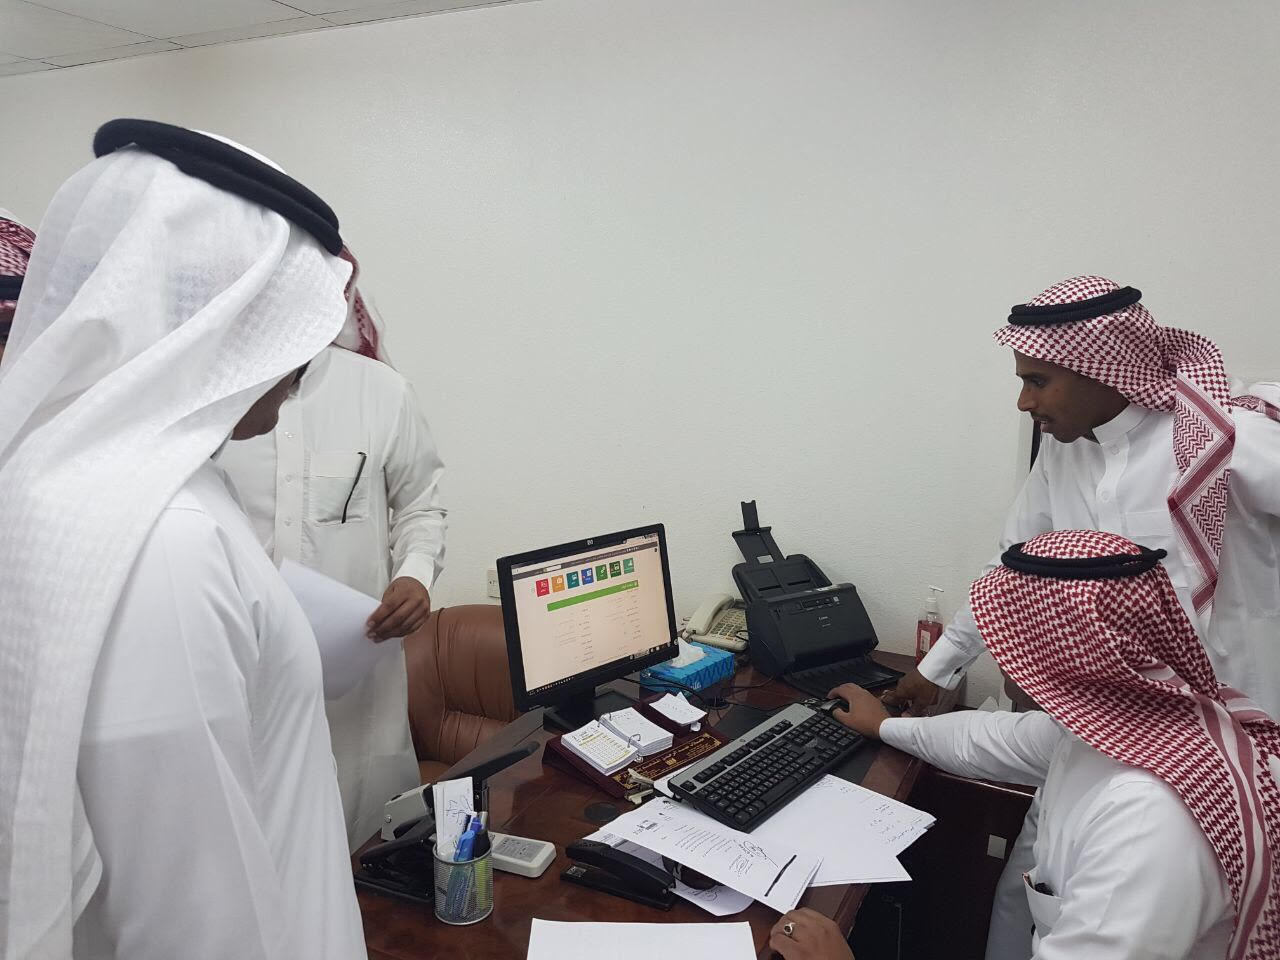 ضمان الرياض يعرّف المكاتب التابعة بنظام “المراسلات” الحديث